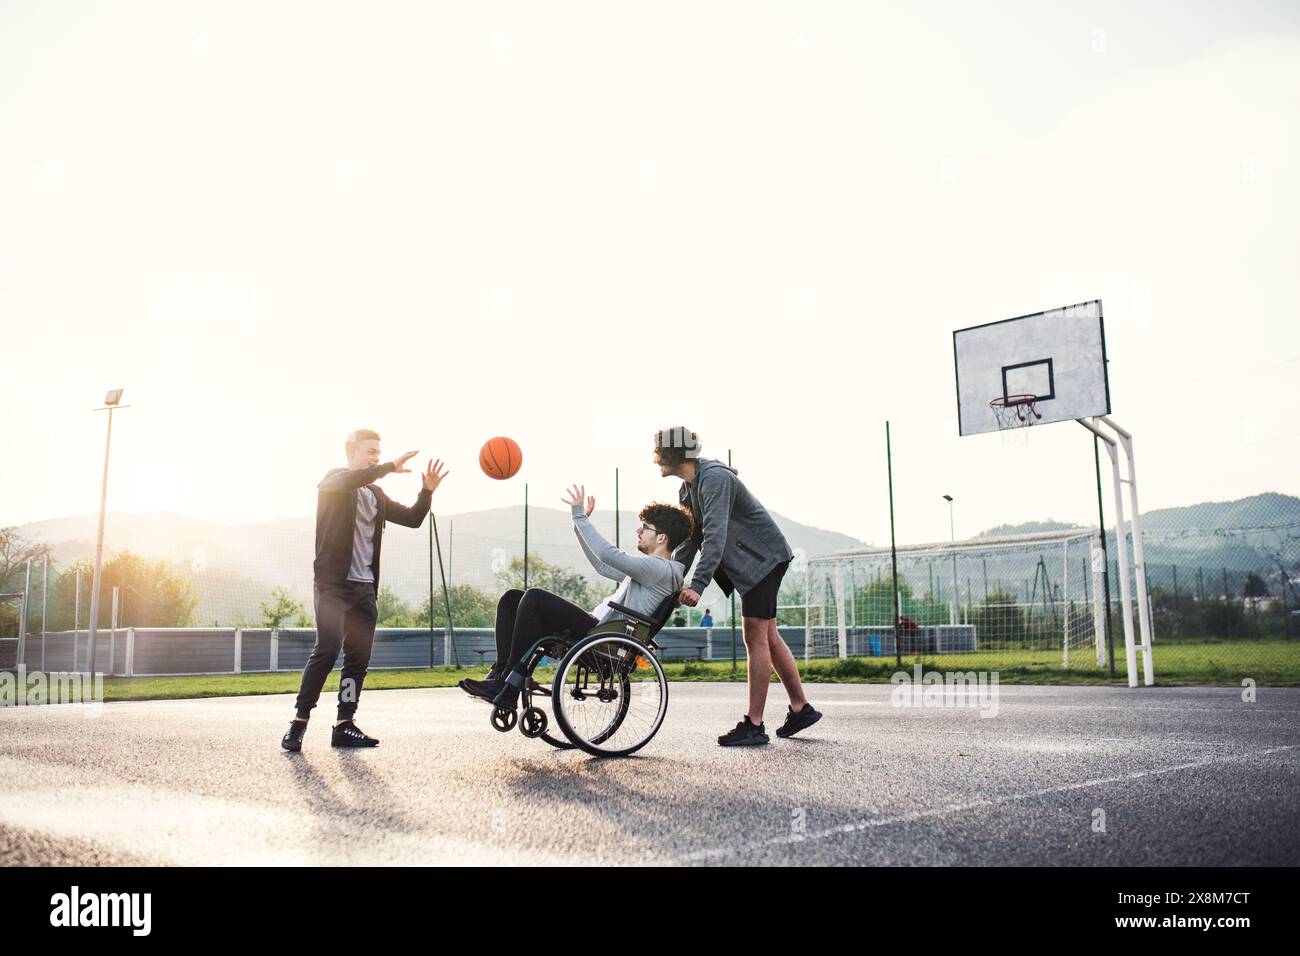 Behinderter junger Mann im Rollstuhl, der mit seinen Freunden Basketball spielt. Teamwrok und männliche Freundschaft. Stockfoto